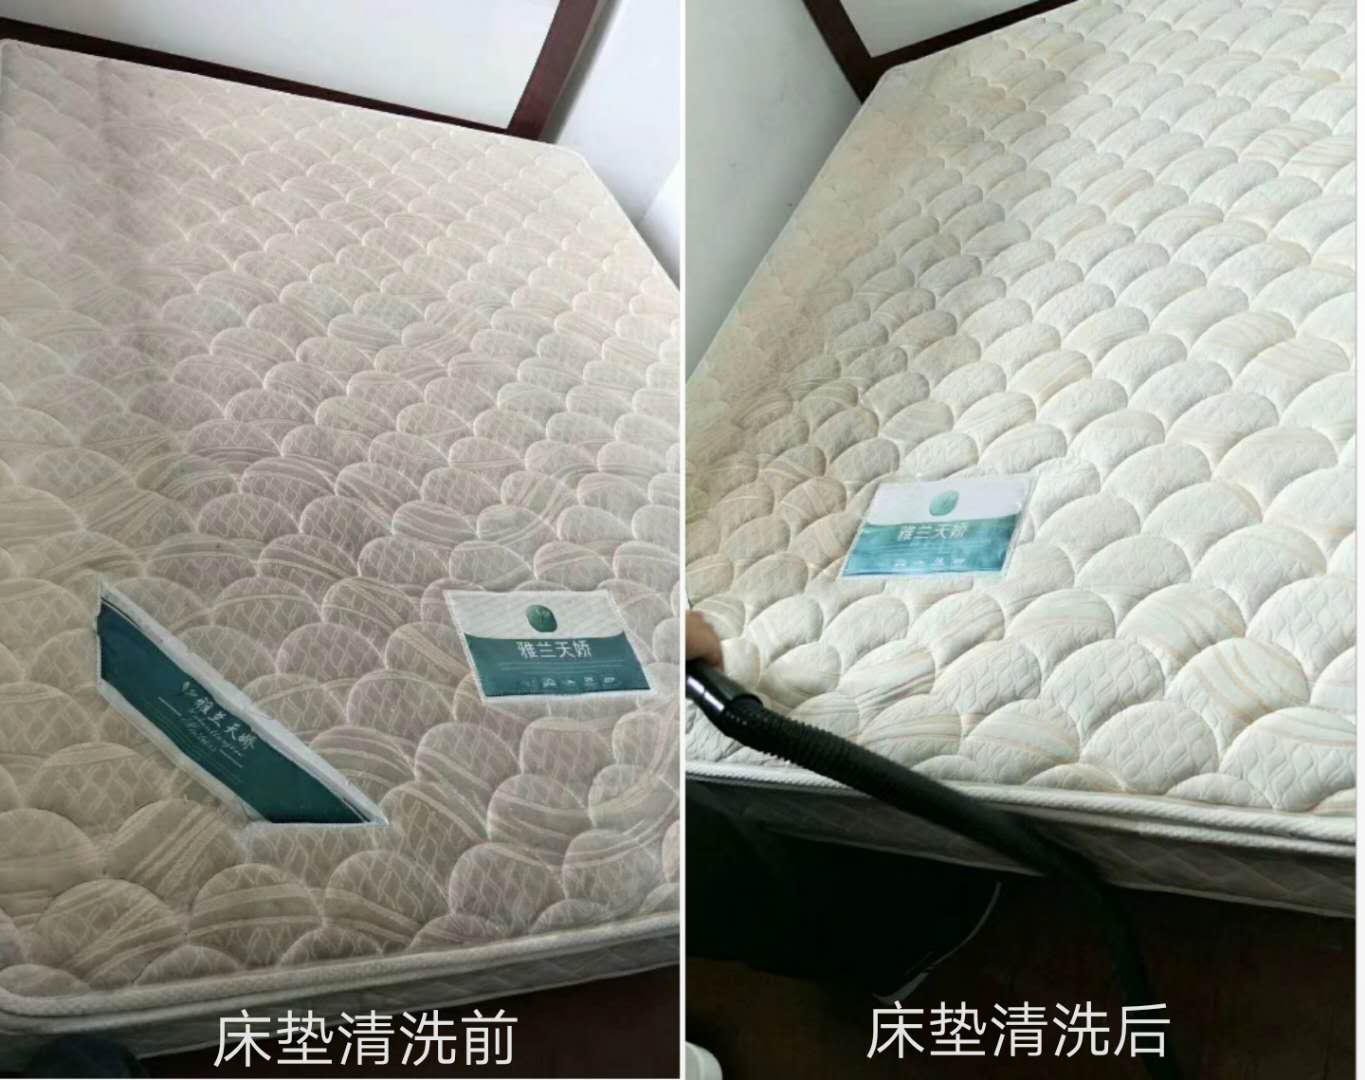 床墊除螨技術之針對各種不明污質清理